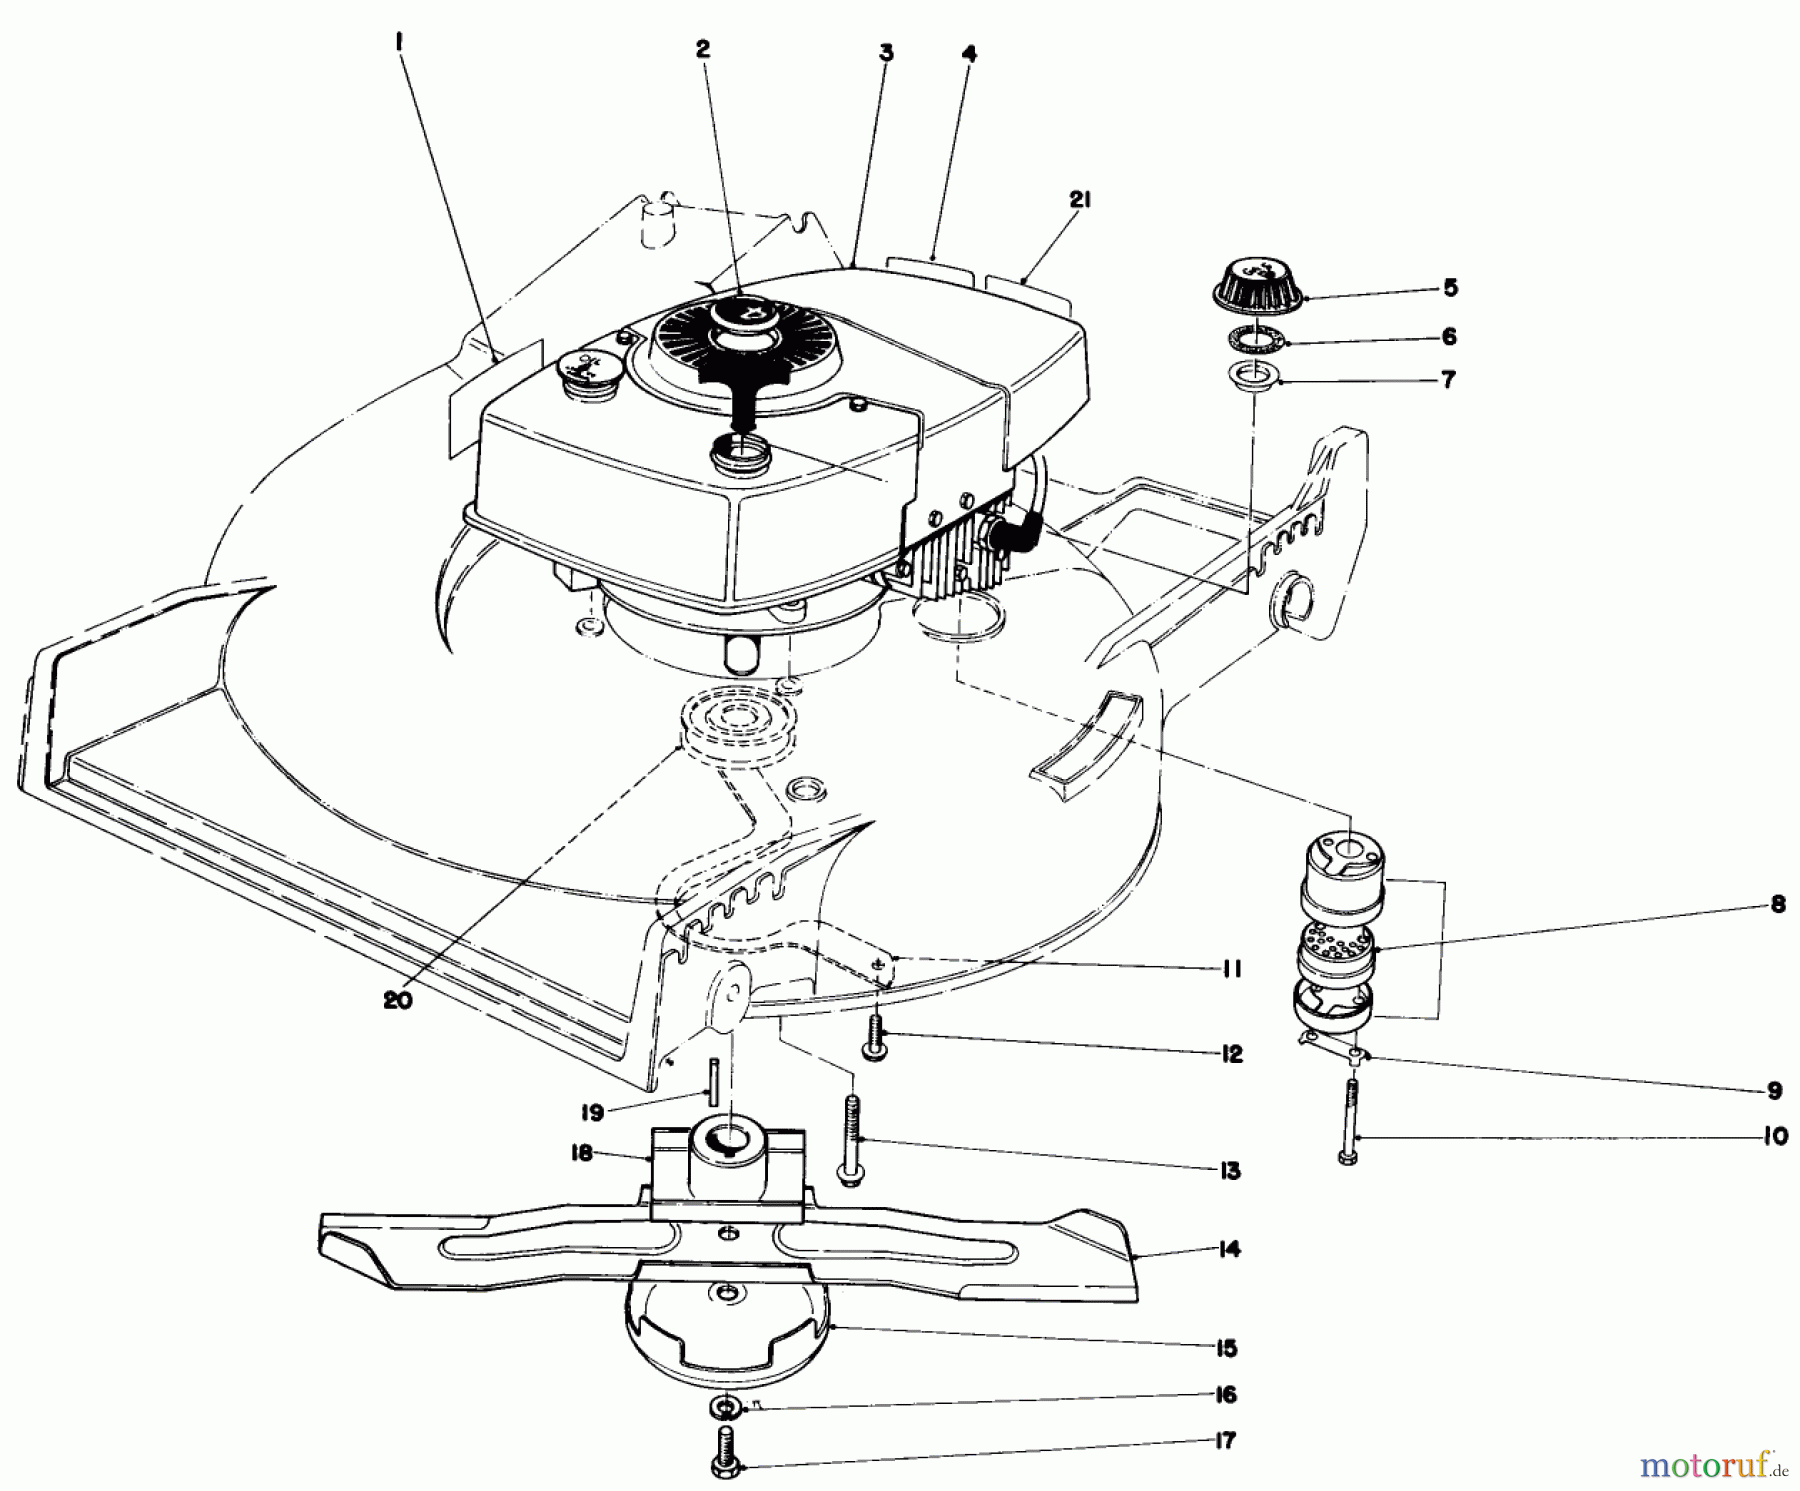  Toro Neu Mowers, Walk-Behind Seite 1 20810 - Toro Lawnmower, 1979 (9000001-9999999) ENGINE ASSEMBLY